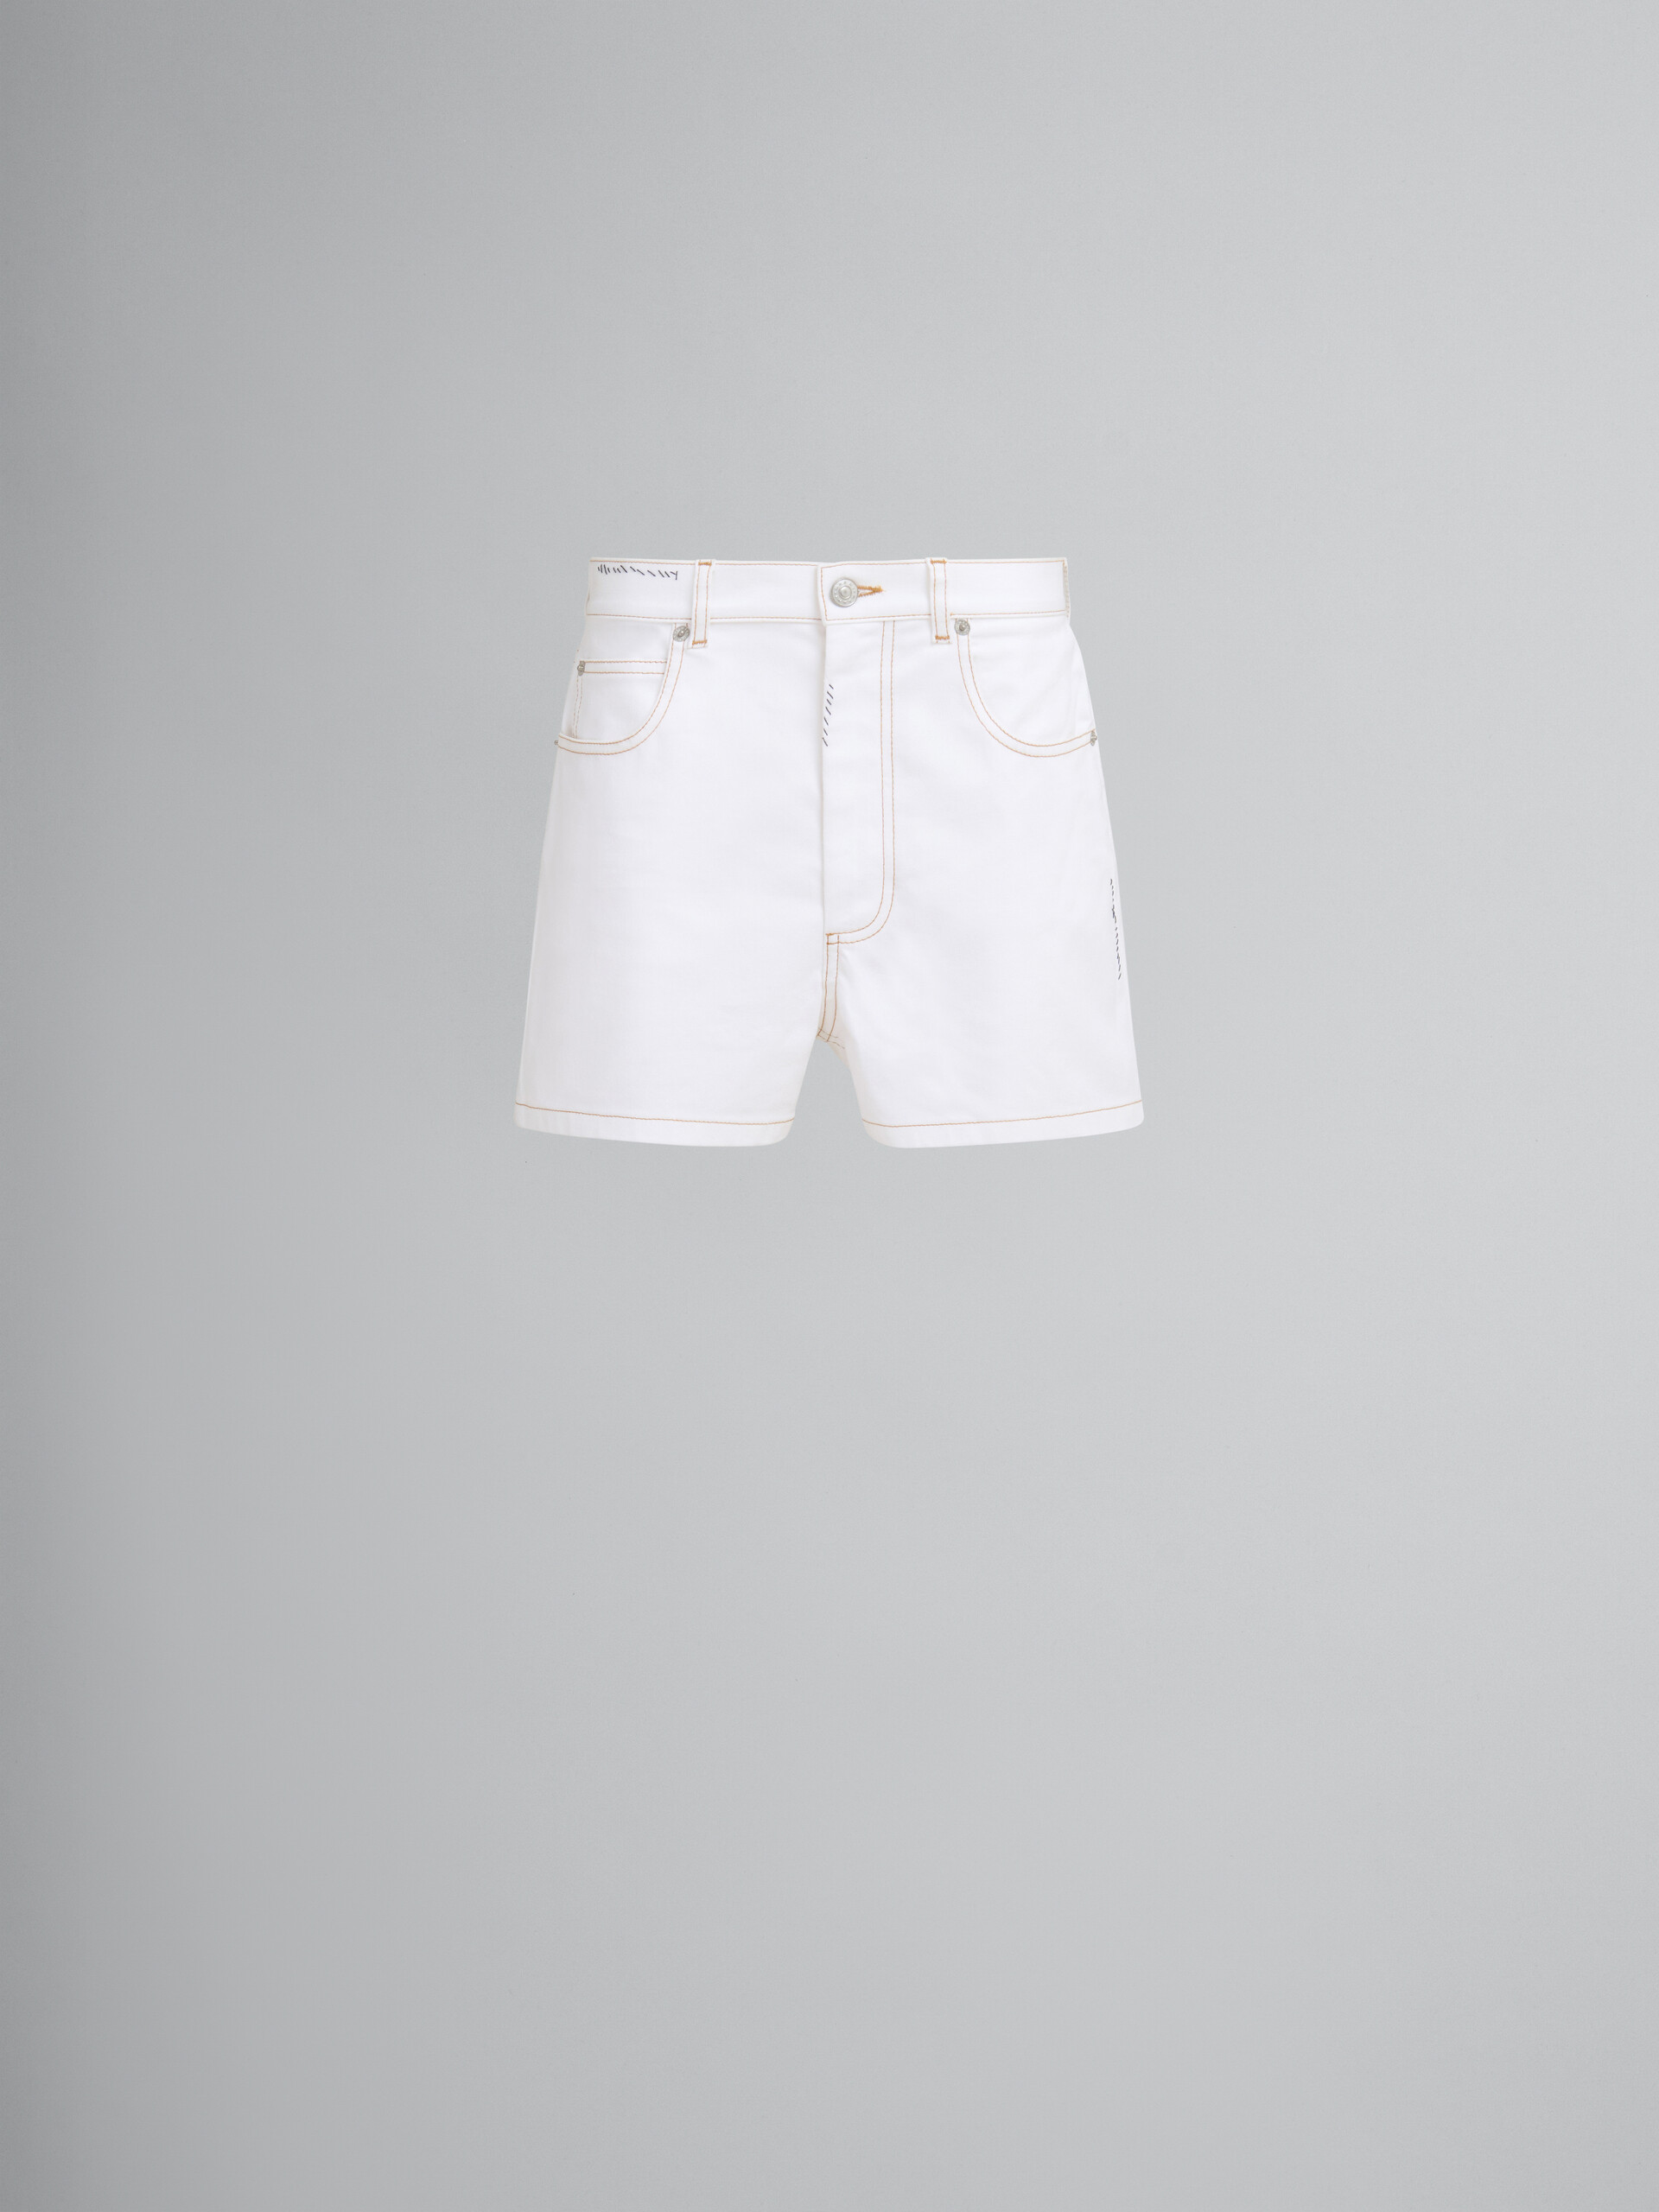 Pantalón corto de denim blanco con parches en forma de flor - Pantalones - Image 1